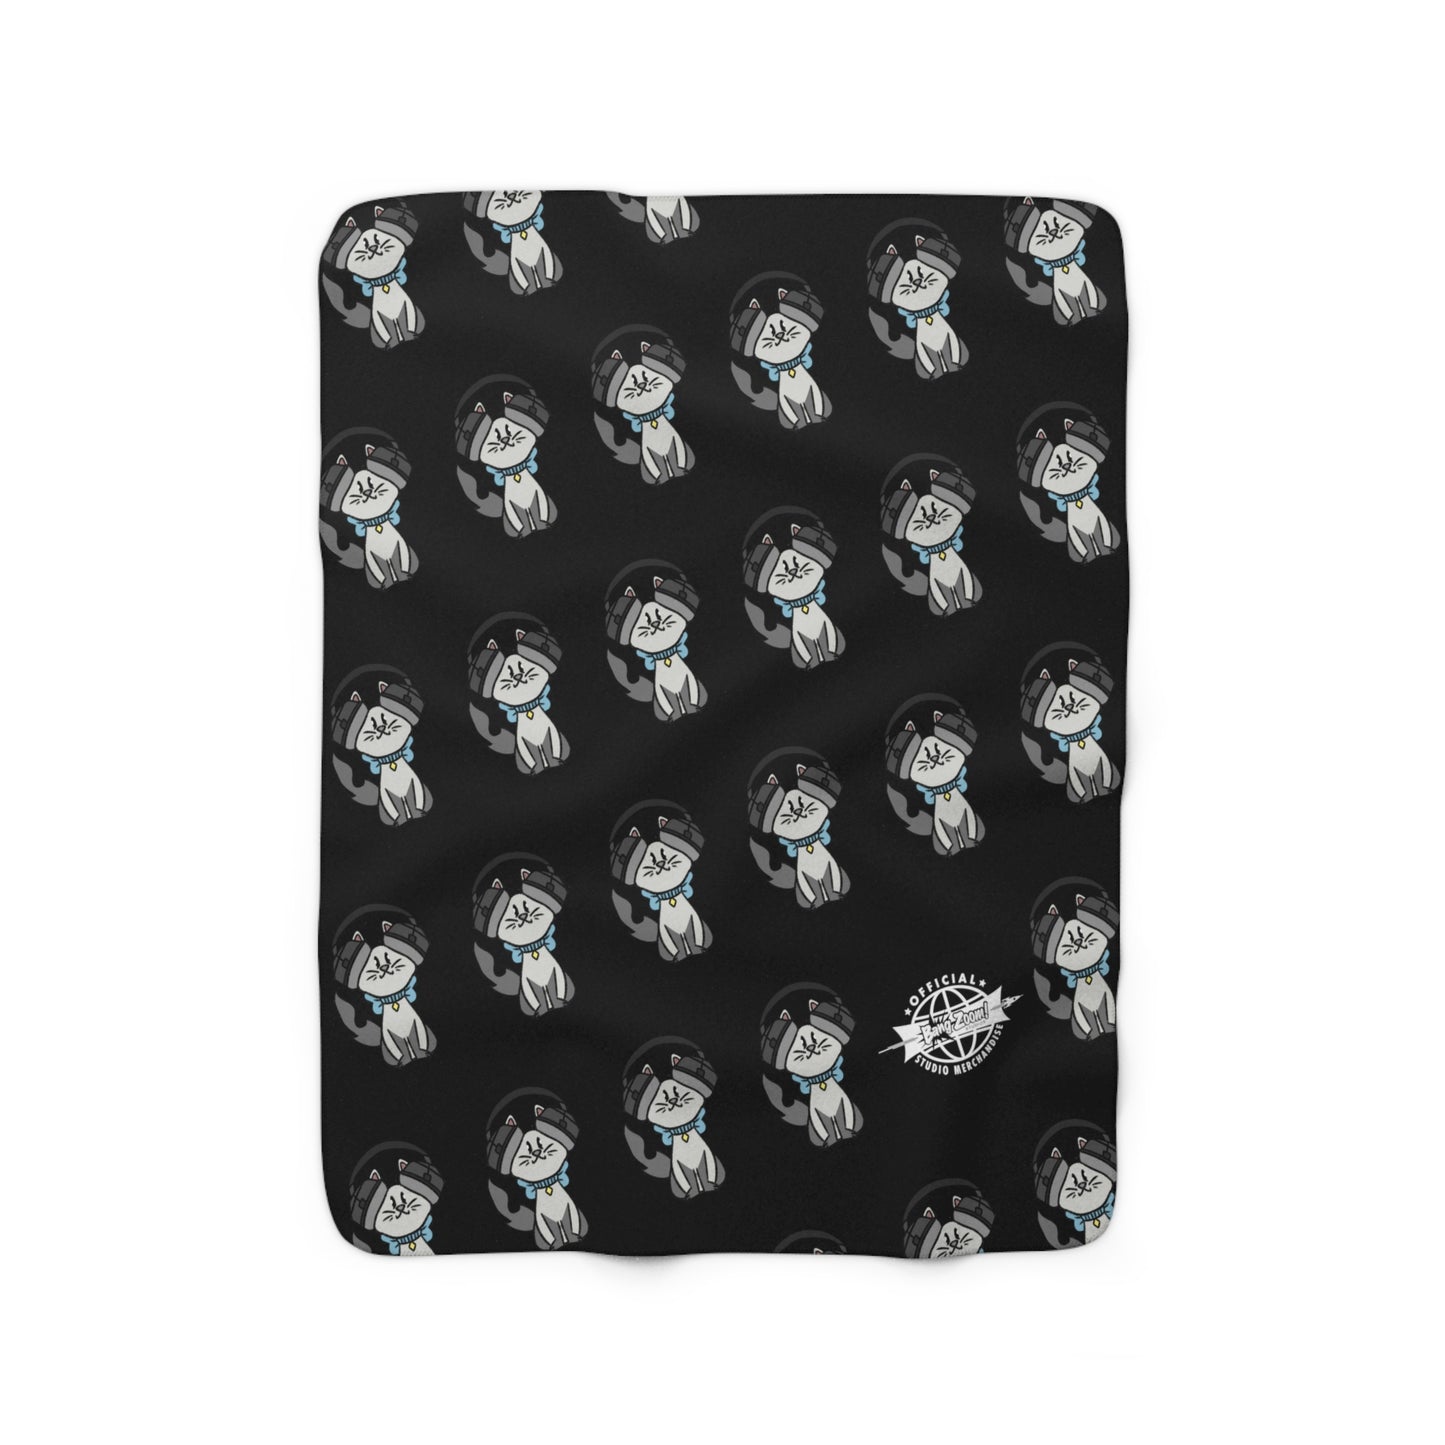 Cat with Headphones Fleece Blanket - Black